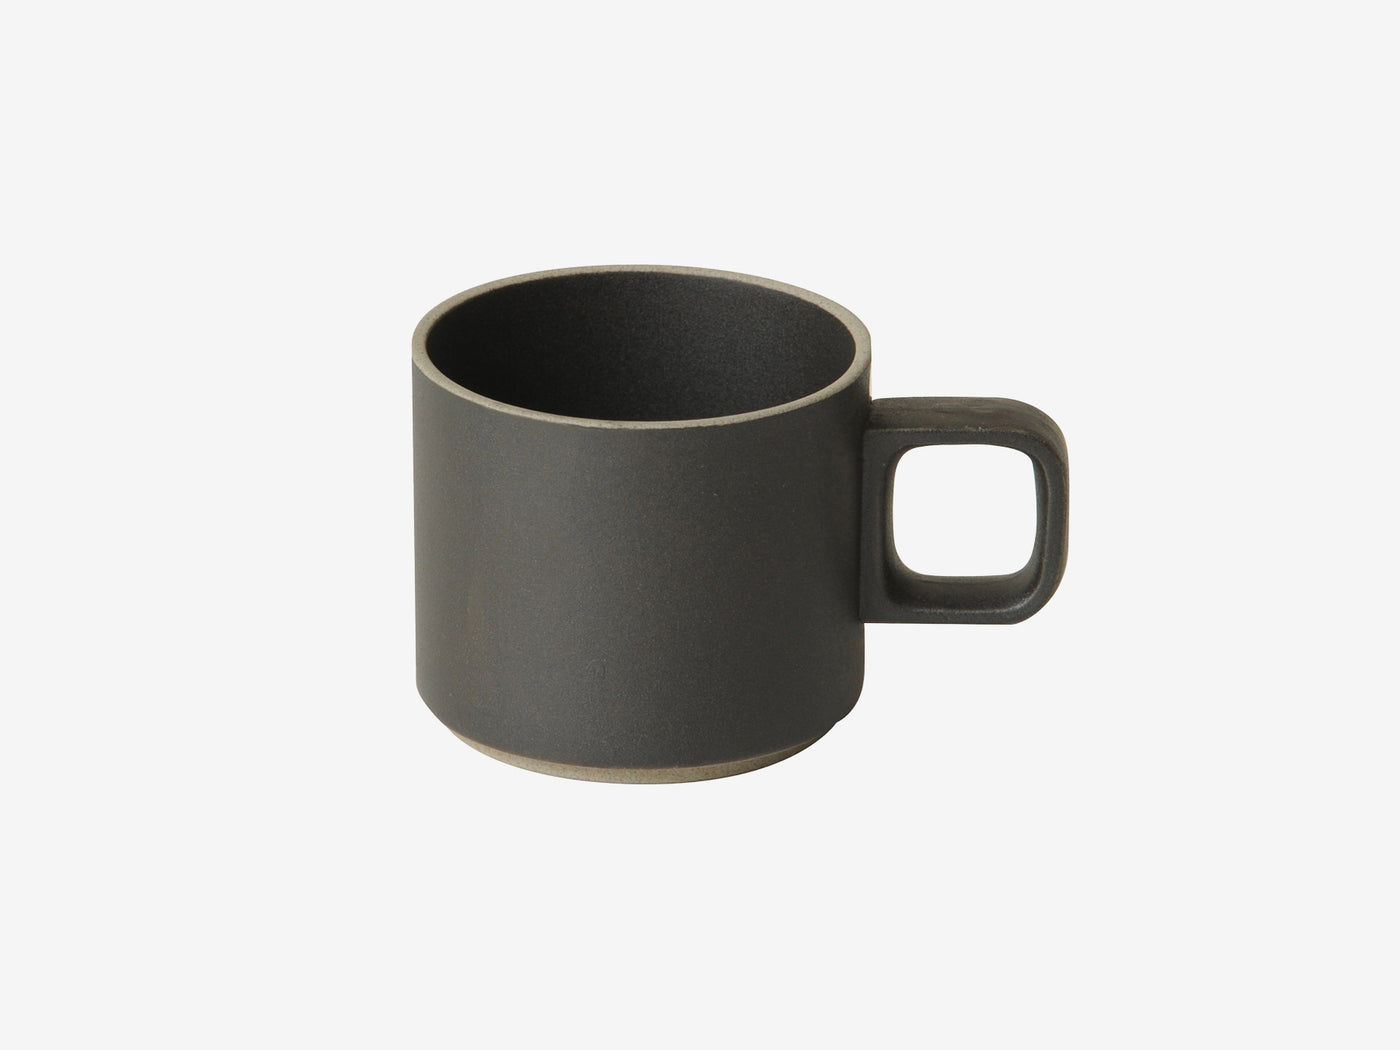 Hasami Porcelain Mug Black hpb019 7.2cm - Simple Beautiful Things